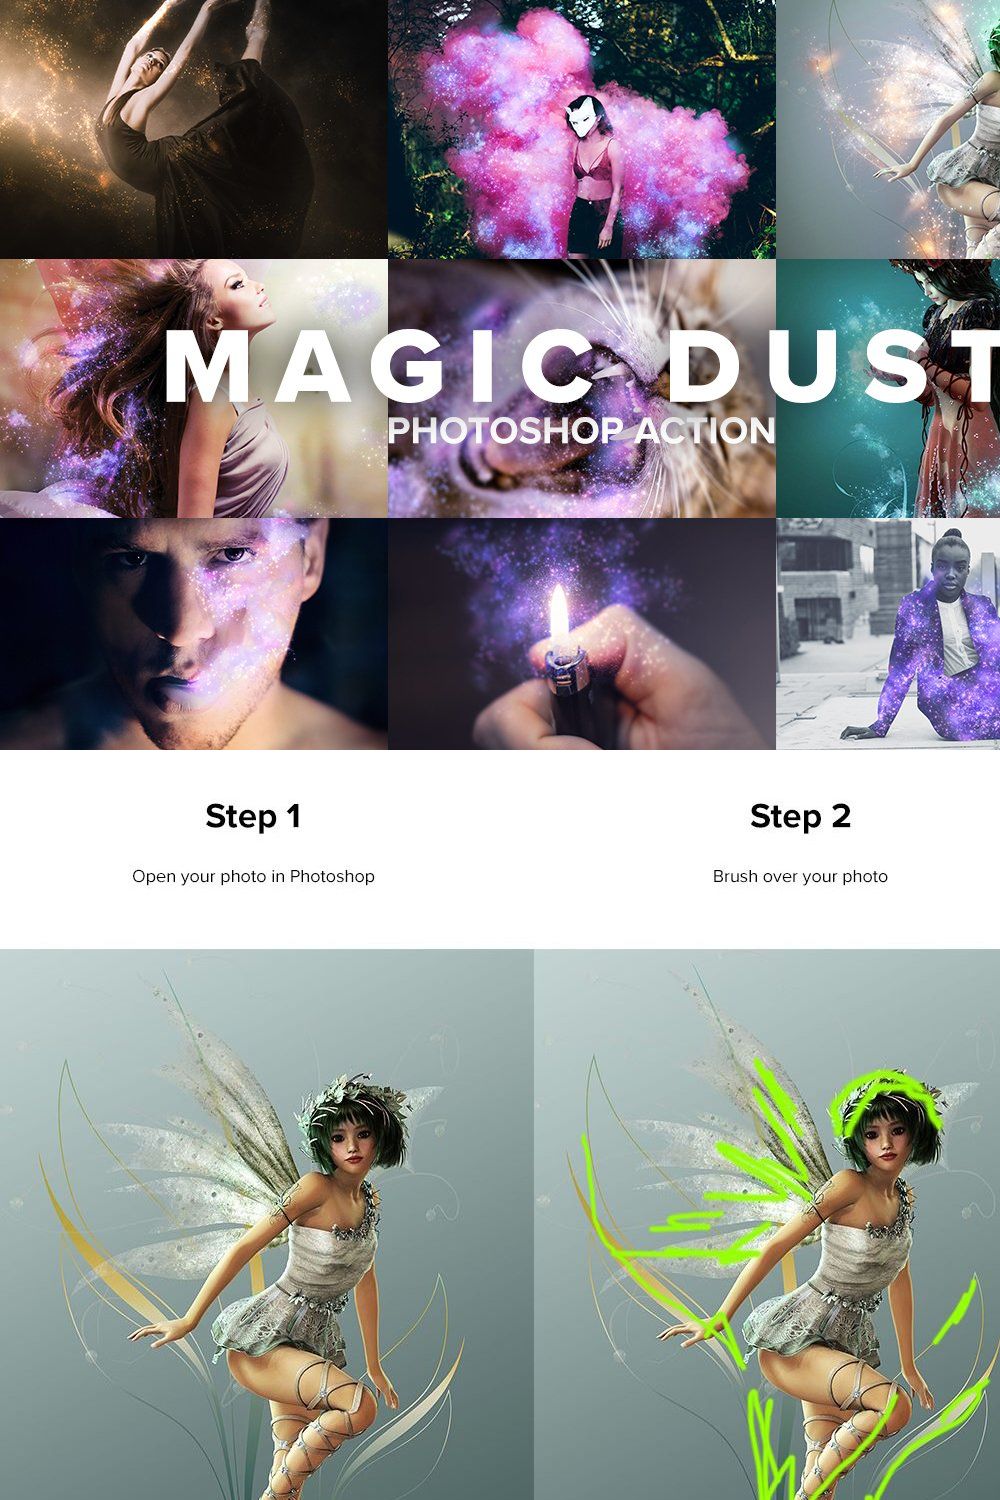 Magic Dust Photoshop Action pinterest preview image.